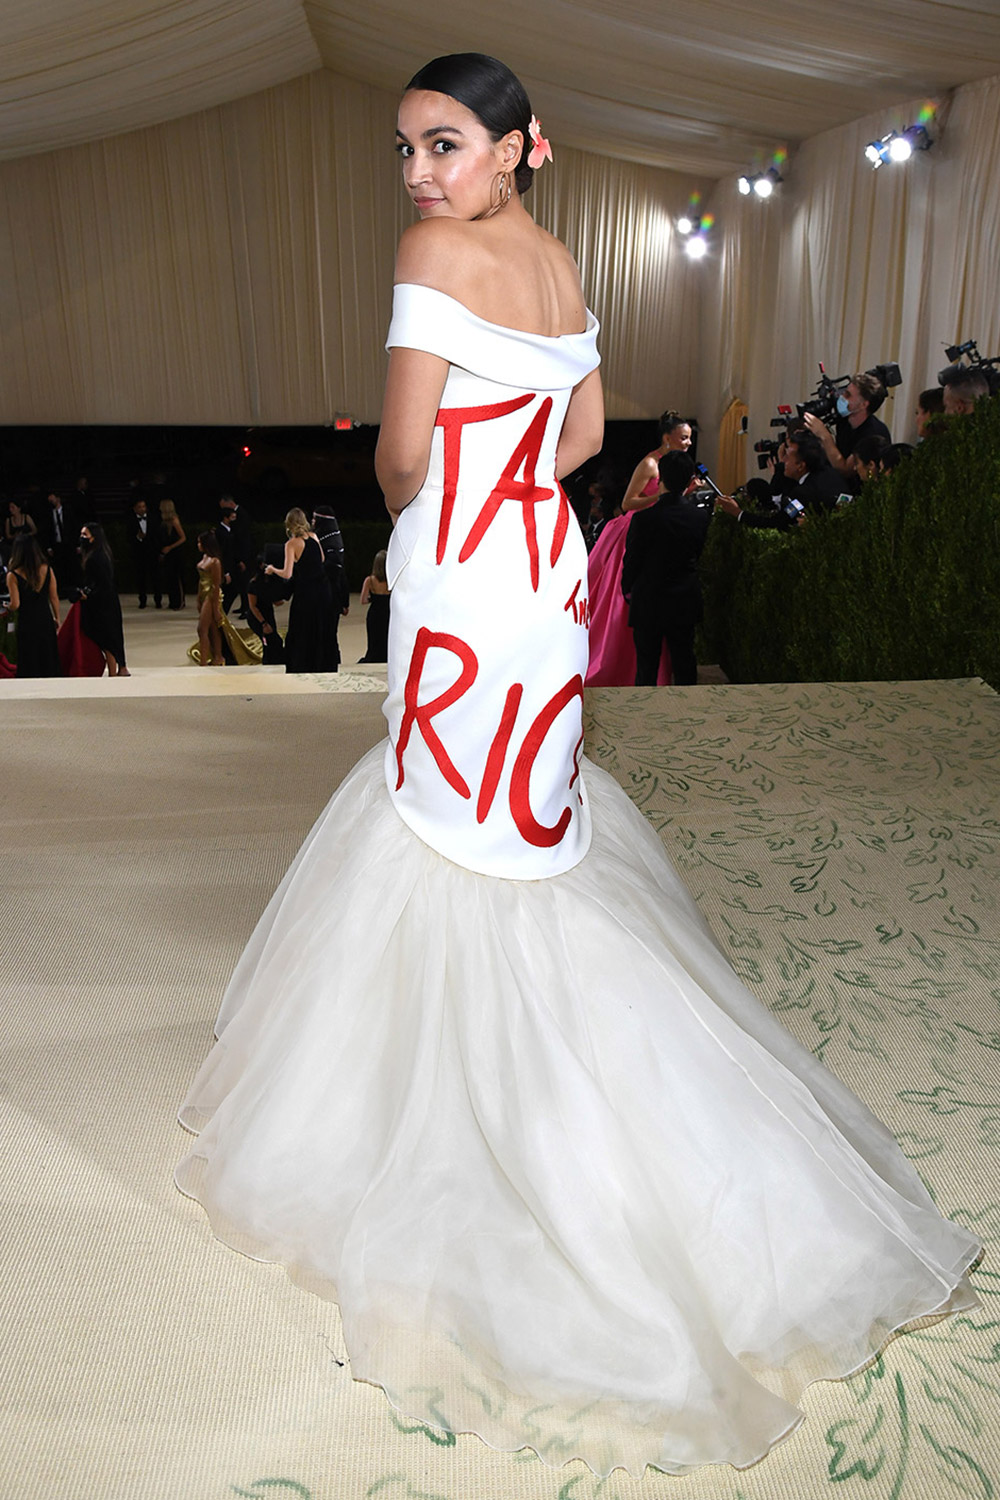 Alexandria Ocasio-Cortez diện chiếc đầm trắng với dòng biểu ngữ “Tax the Rich” mang màu sắc chính trị.